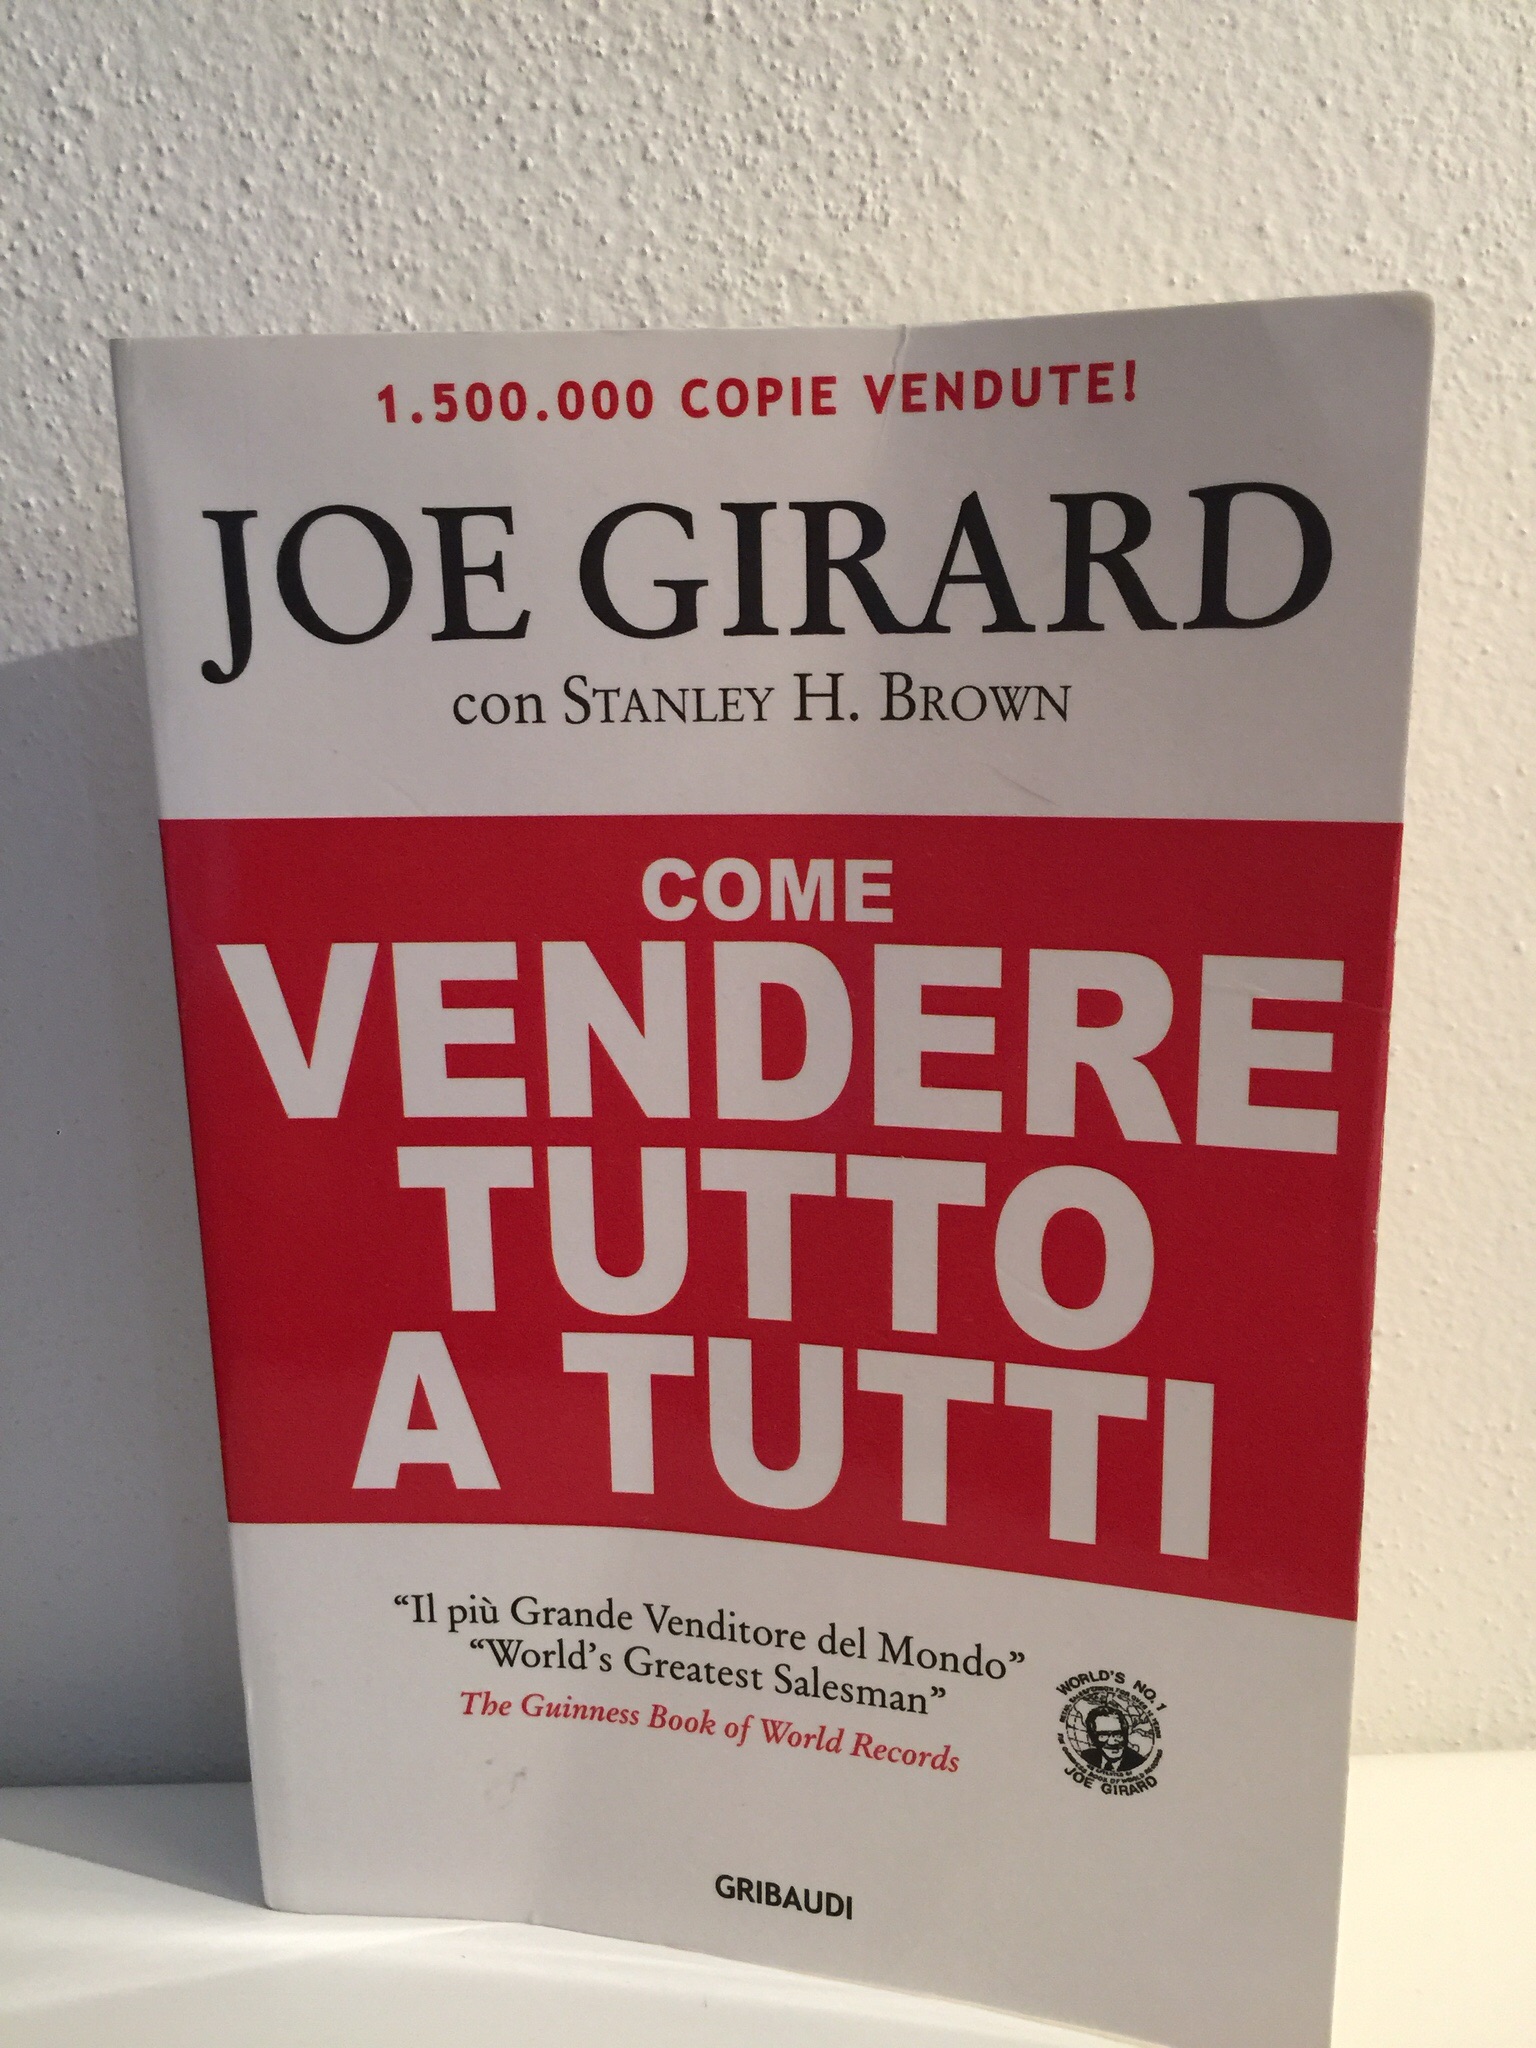 Come vendere tutto a tutti – Joe Girard